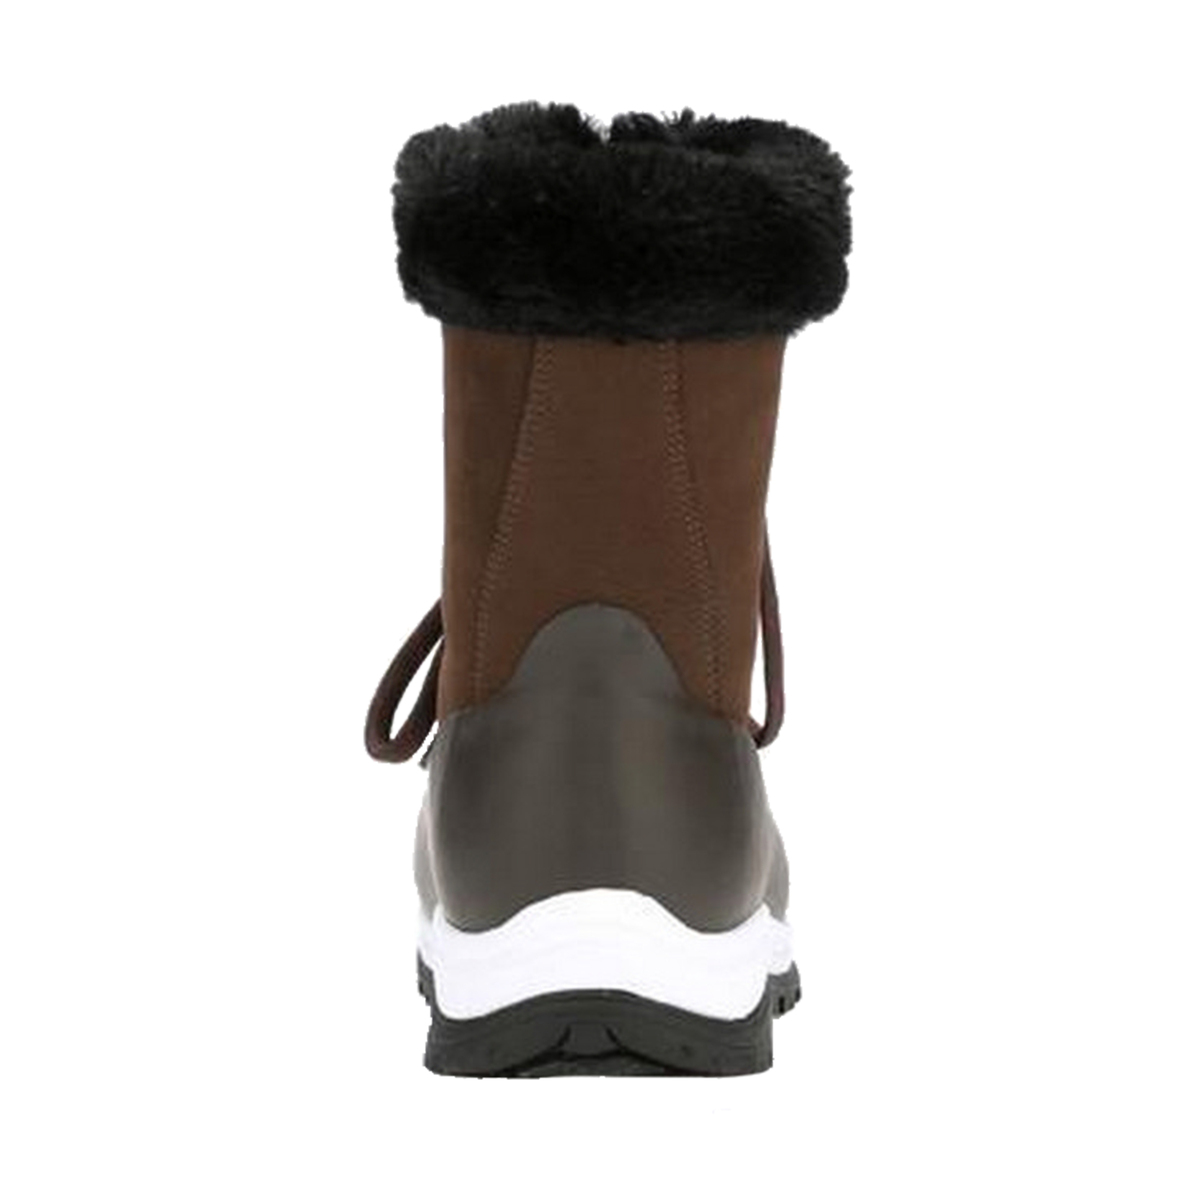 (マックブーツ) Muck Boots レディース Arctic Apres レースアップ ミドル ブーツ 婦人靴 カジュアル アウトドア シューズ 女性用 【海外通販】 靴・ブーツ